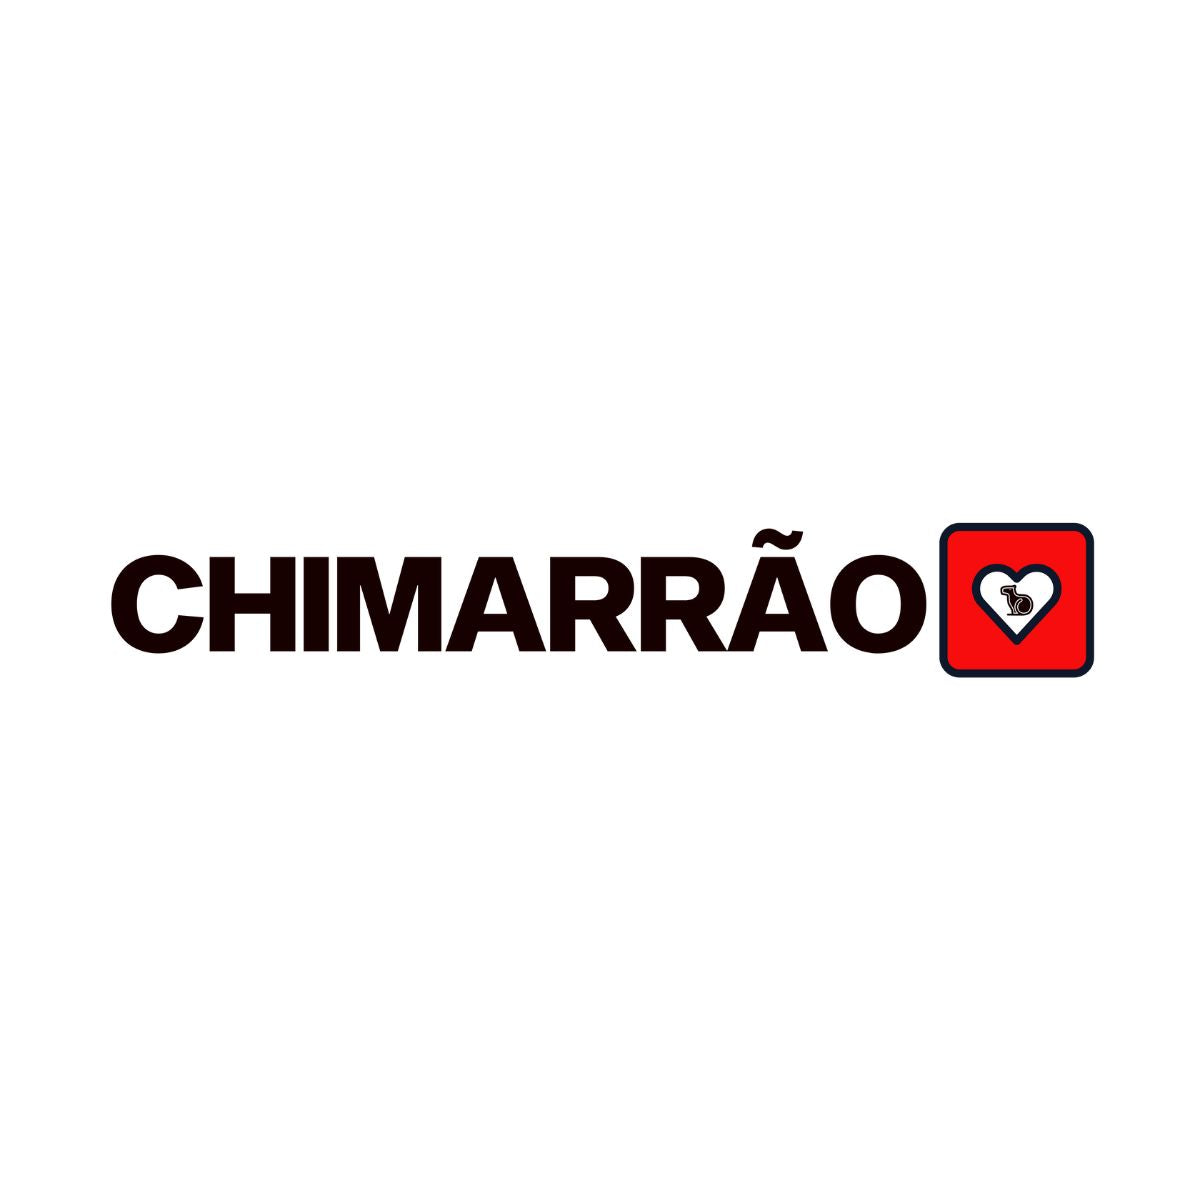 CAMISETA CASAL 02 - EU AMO CHIMARRÃO